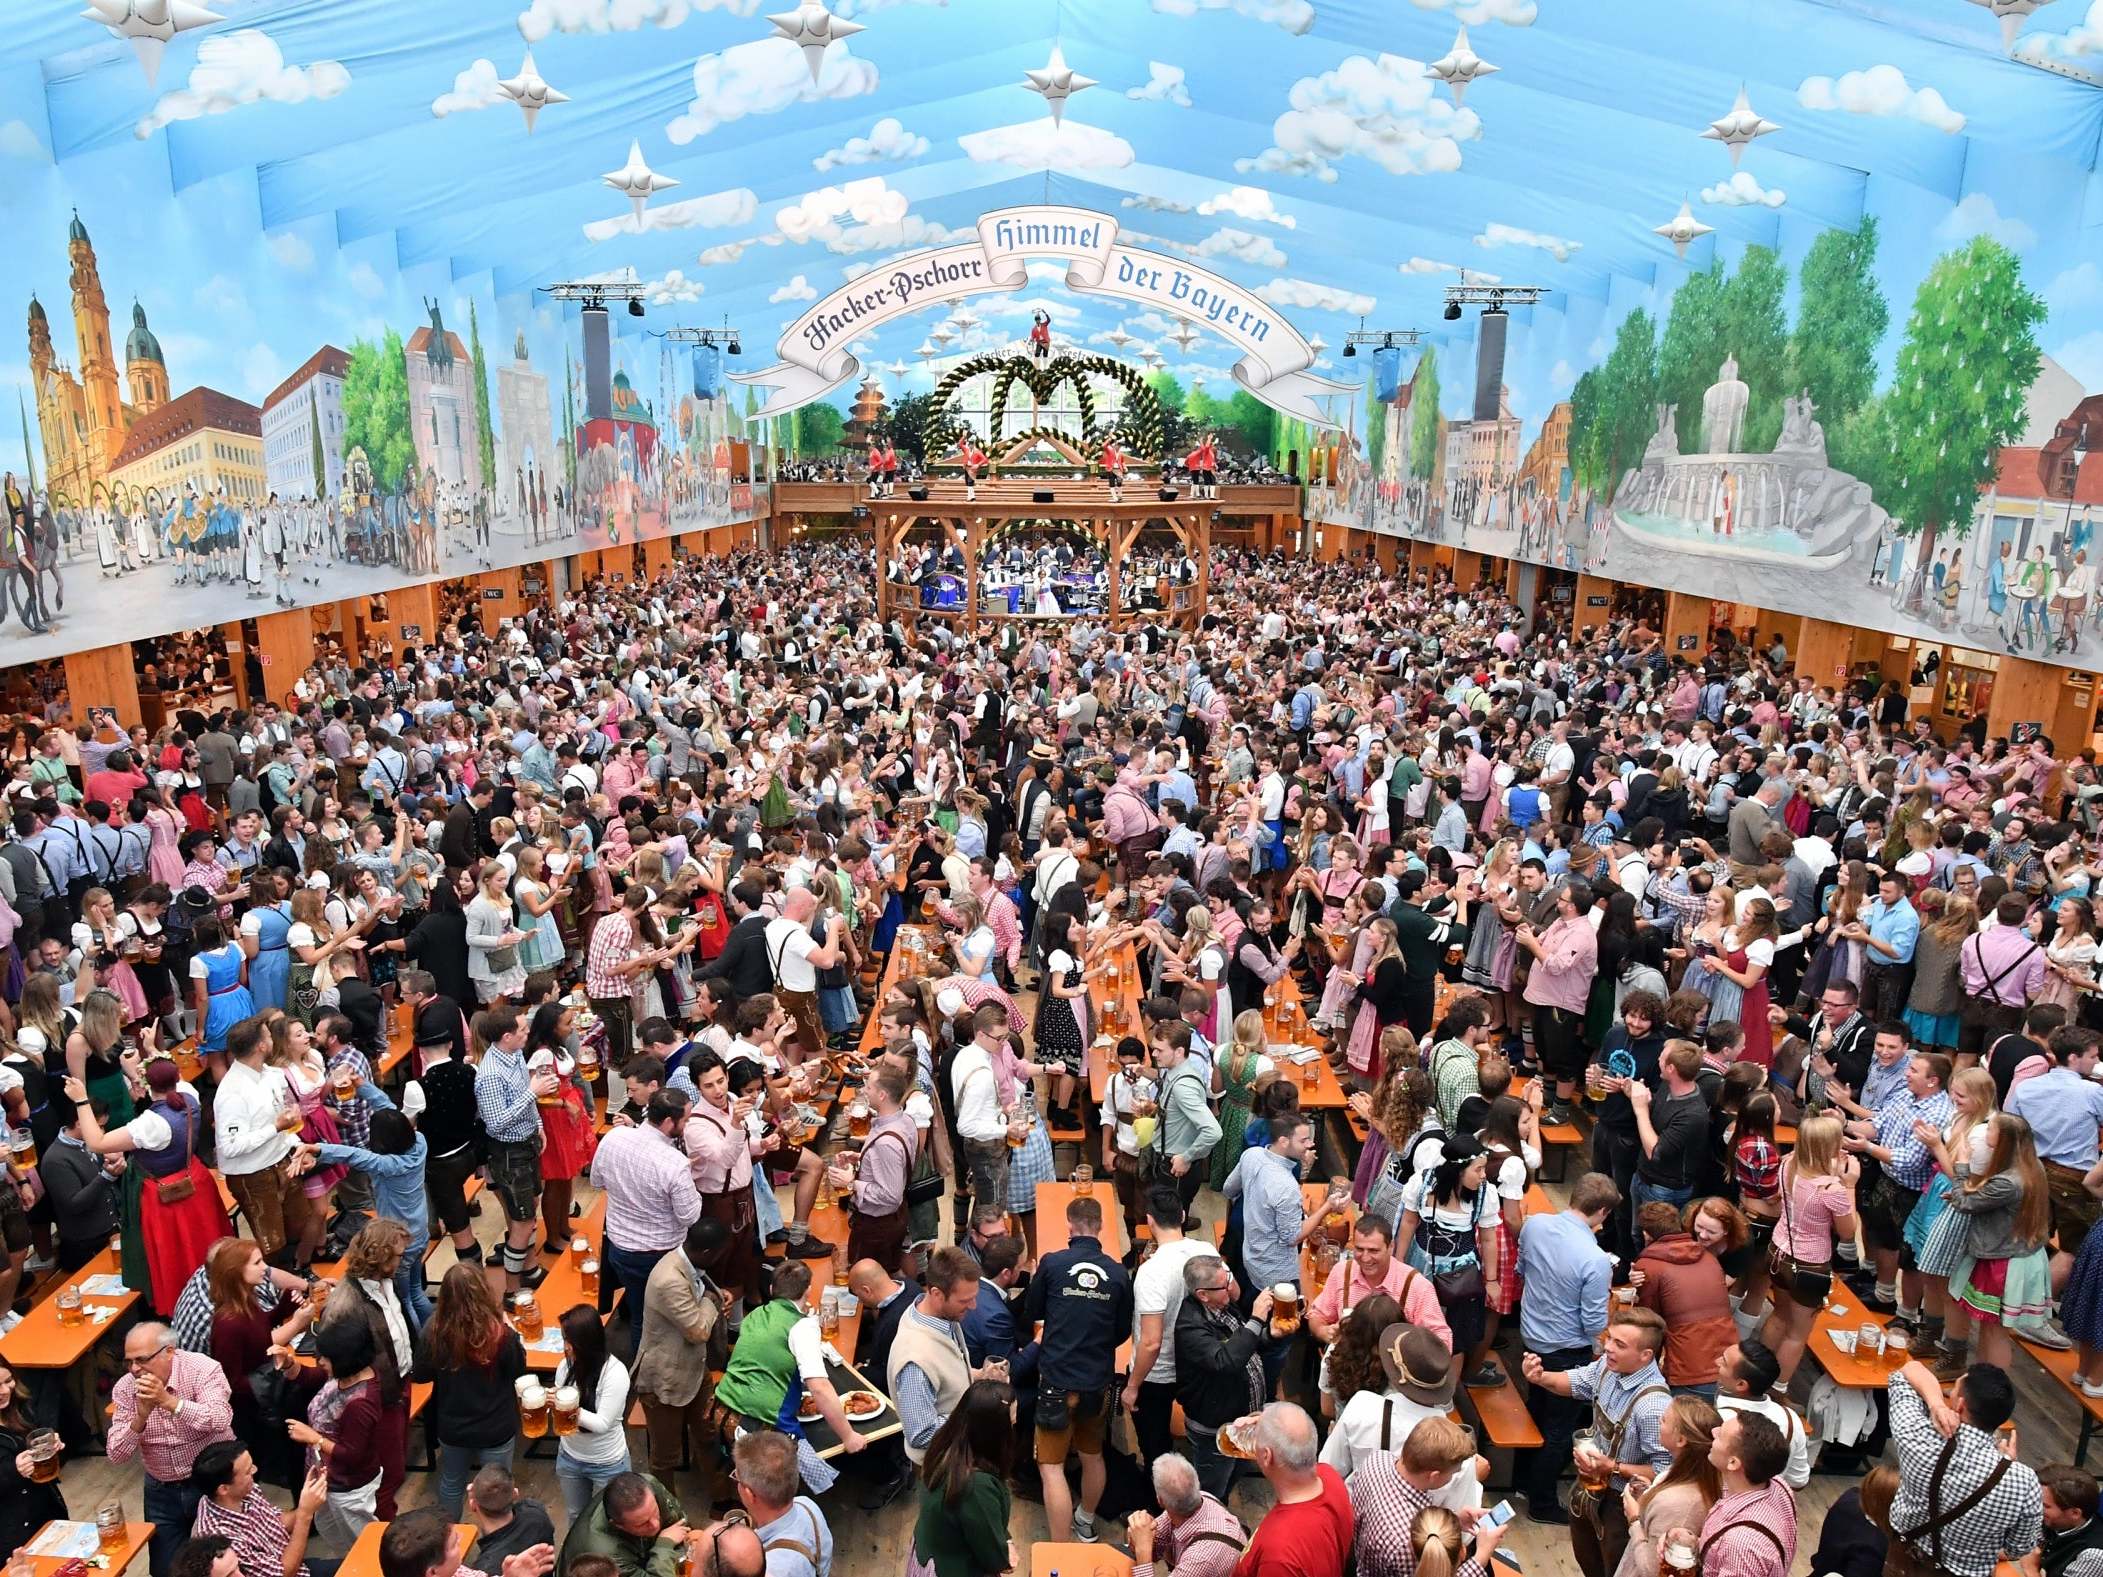 Visitors celebrate in the beer tent 'Hacker-Pschorr - Himmel der Bayern' ('Bavarian heaven') at day 2 of the 2017 Oktoberfest beer festival